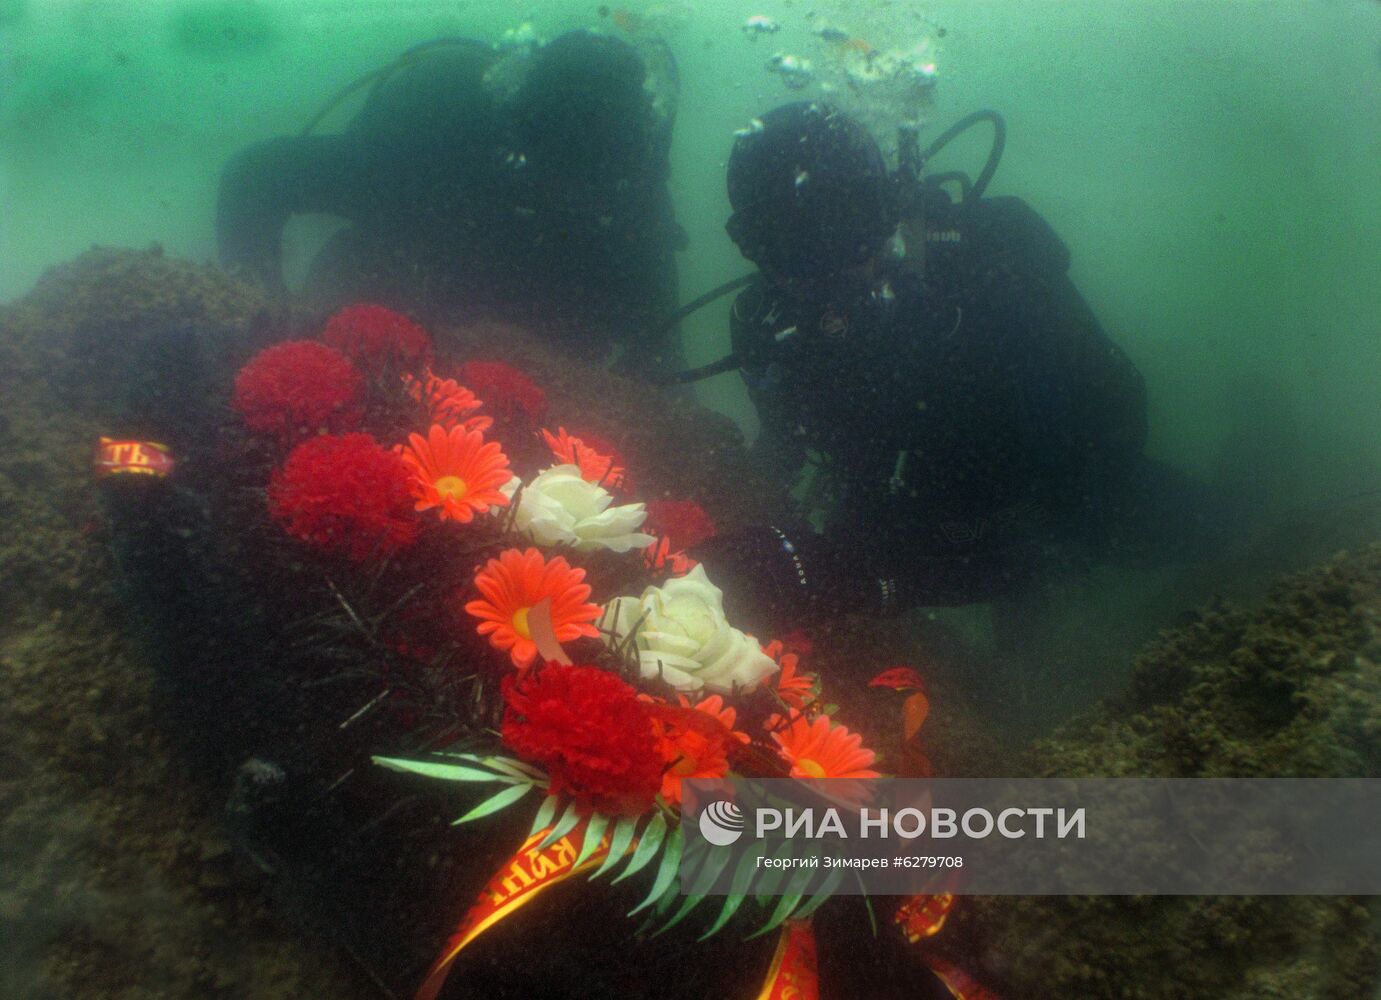 Акция по установке памятных табличек на затонувшей в годы войны технике в Азовском море